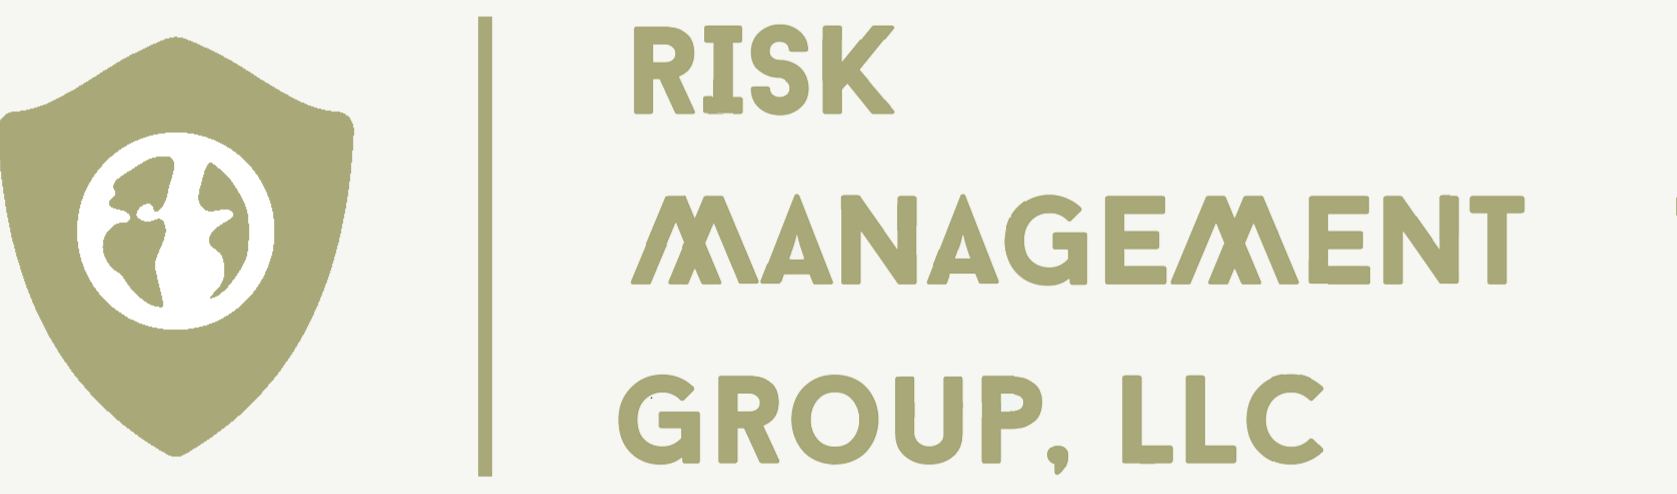 Risk Management Group, LLC